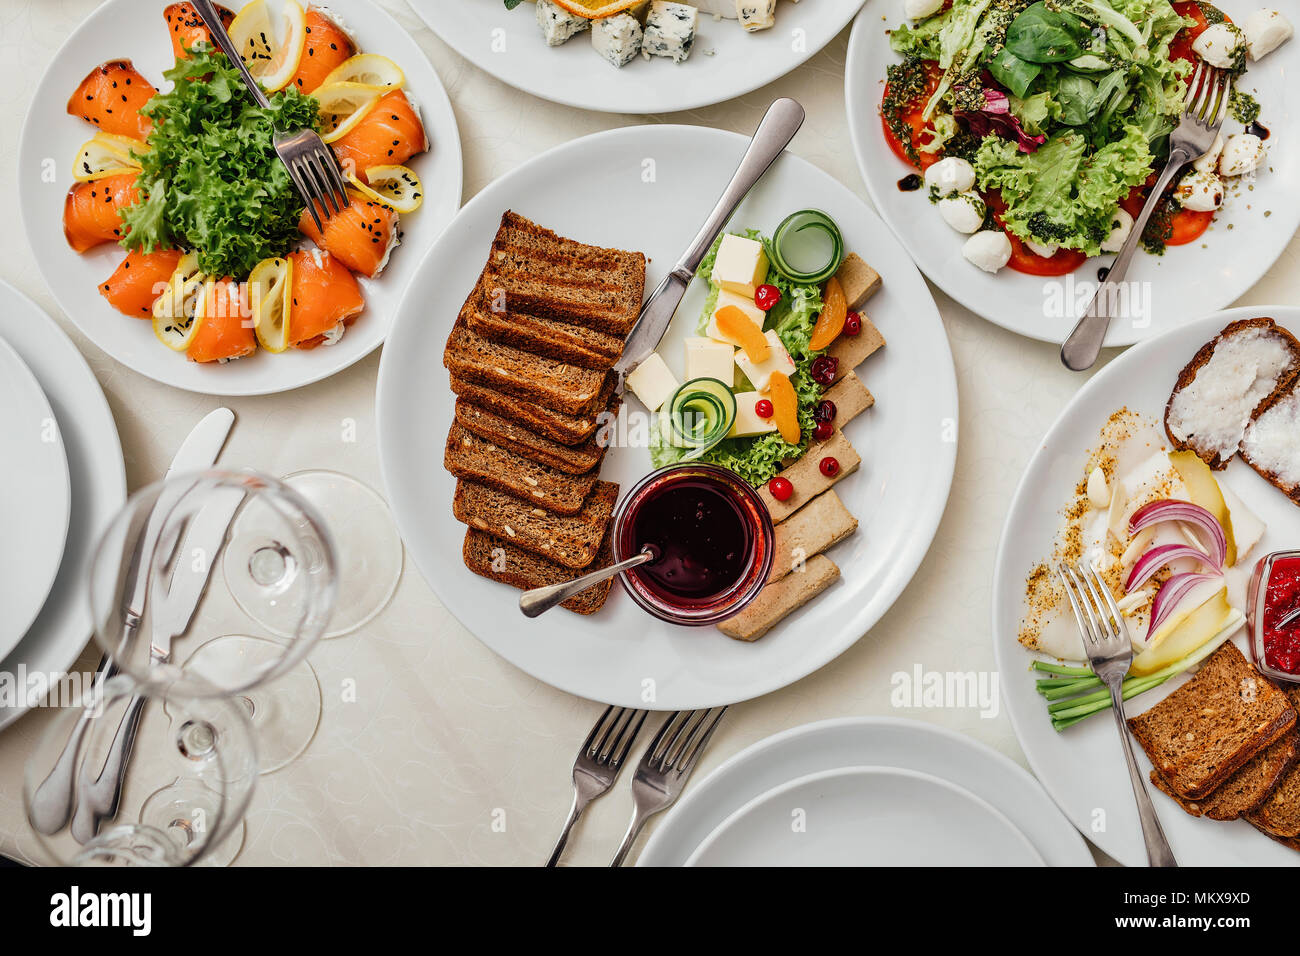 Serviert Gerichte auf den Tisch, für Ihren Urlaub. Geschirr und Essen auf weiße Tischdecken im Restaurant. Design ein festliches Bankett. Luxuriöses Essen für Gäste und Besucher. Stockfoto